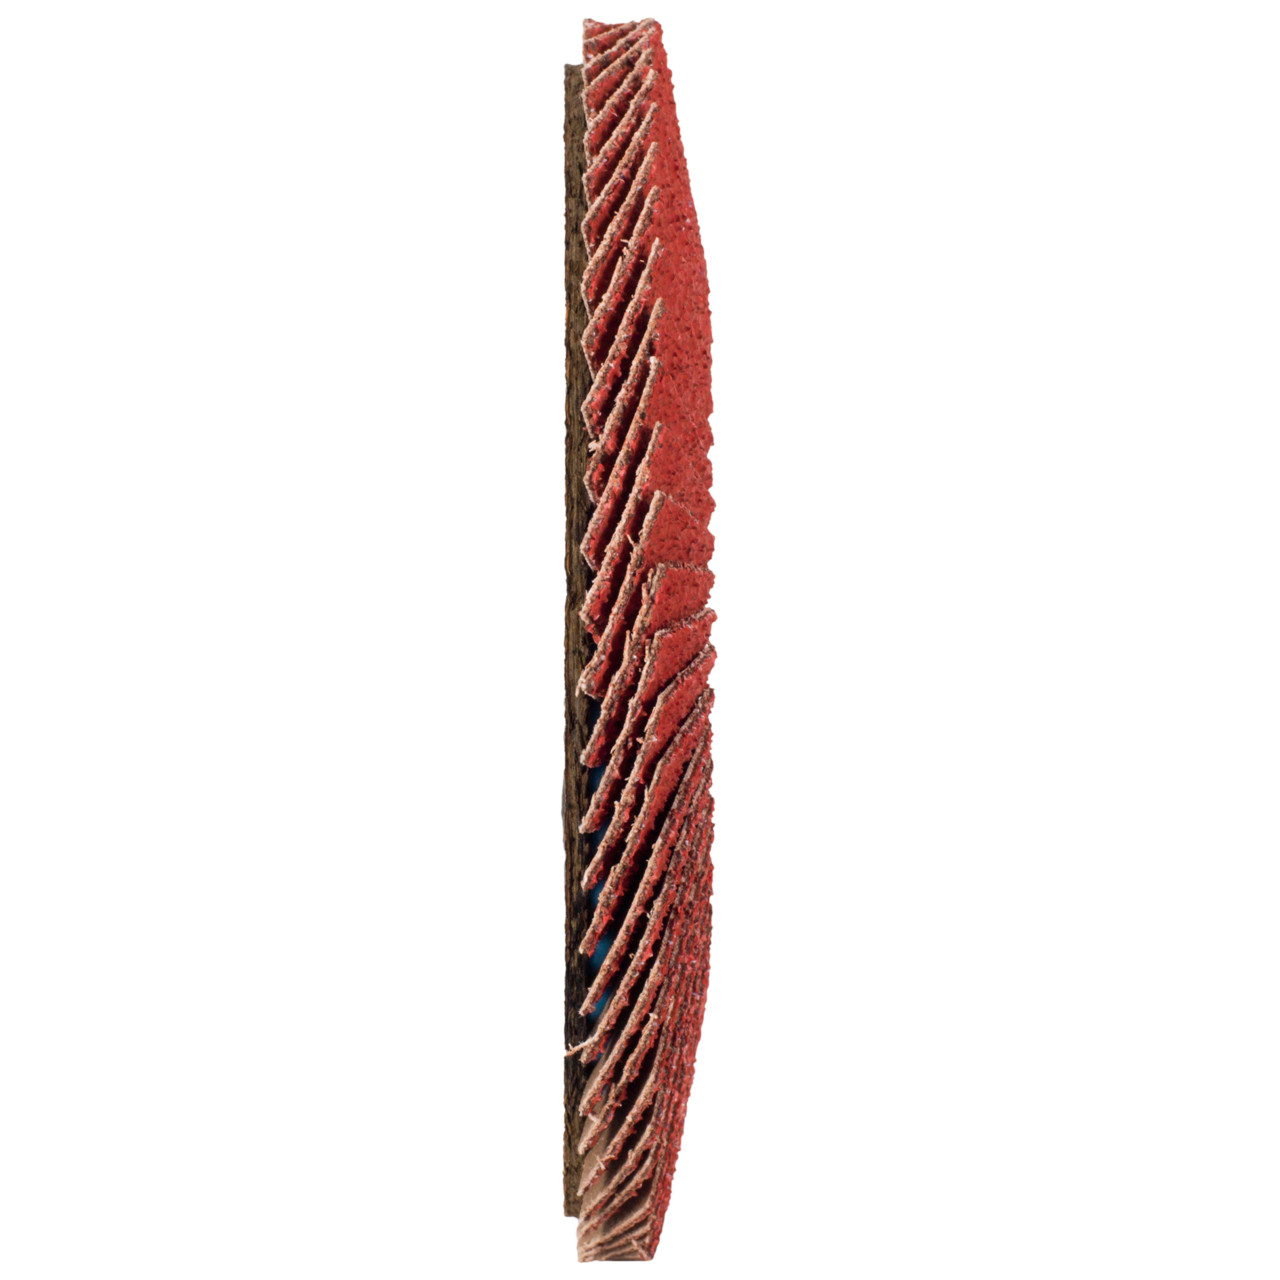 Tyrolit Gekartelde borgring DxH 178x22,23 CERABOND gekartelde borgring voor roestvrij staal, P60, vorm: 28A - rechte versie (glasvezeldragerhuisversie), Art. 34166182